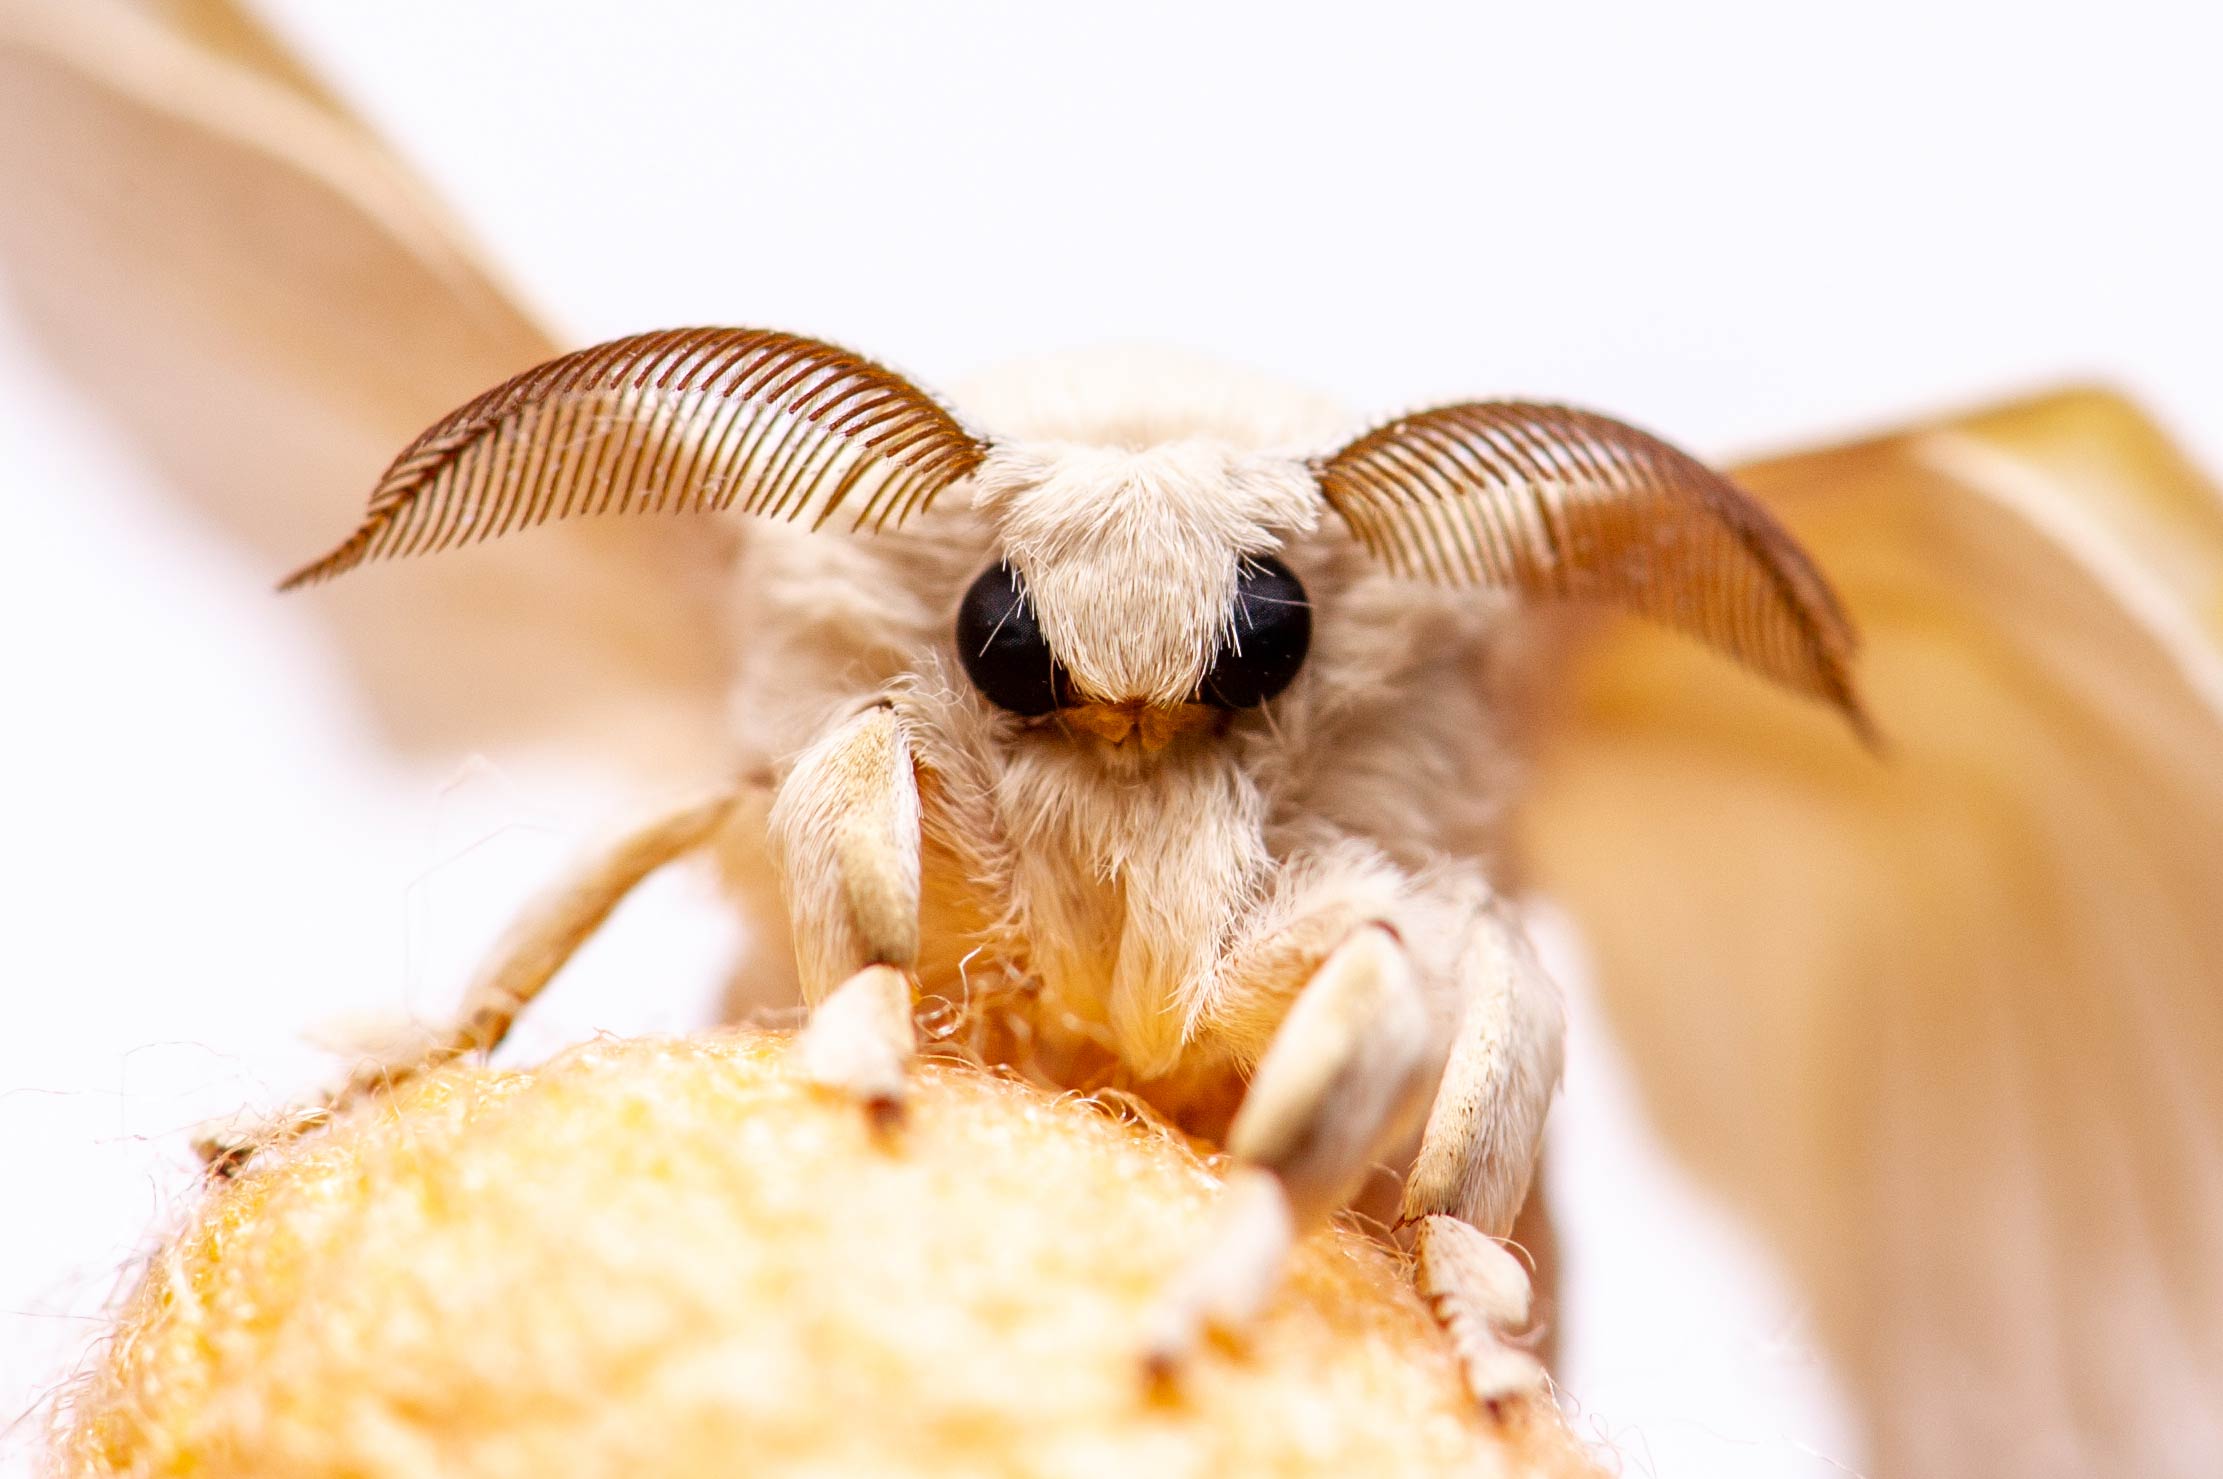 カイコ 虫の写真と生態なら昆虫写真図鑑 ムシミル